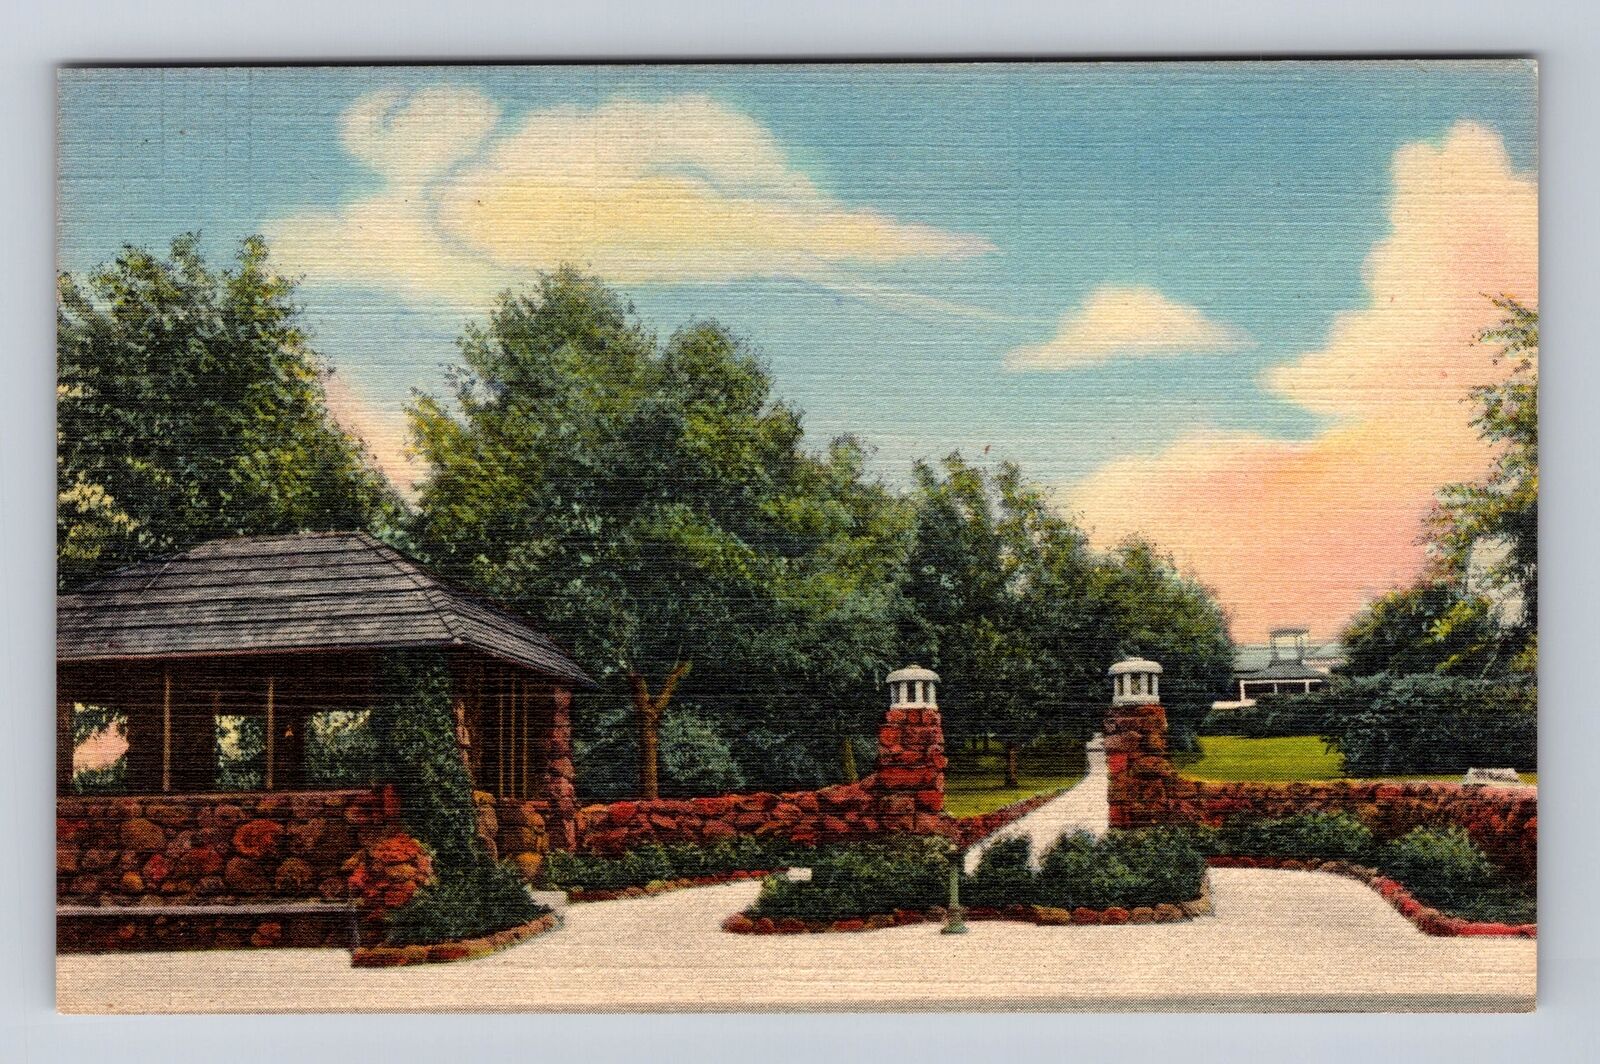 Boulder CO-Colorado, Chautauqua Grounds, Scenic View, Vintage Souvenir Postcard